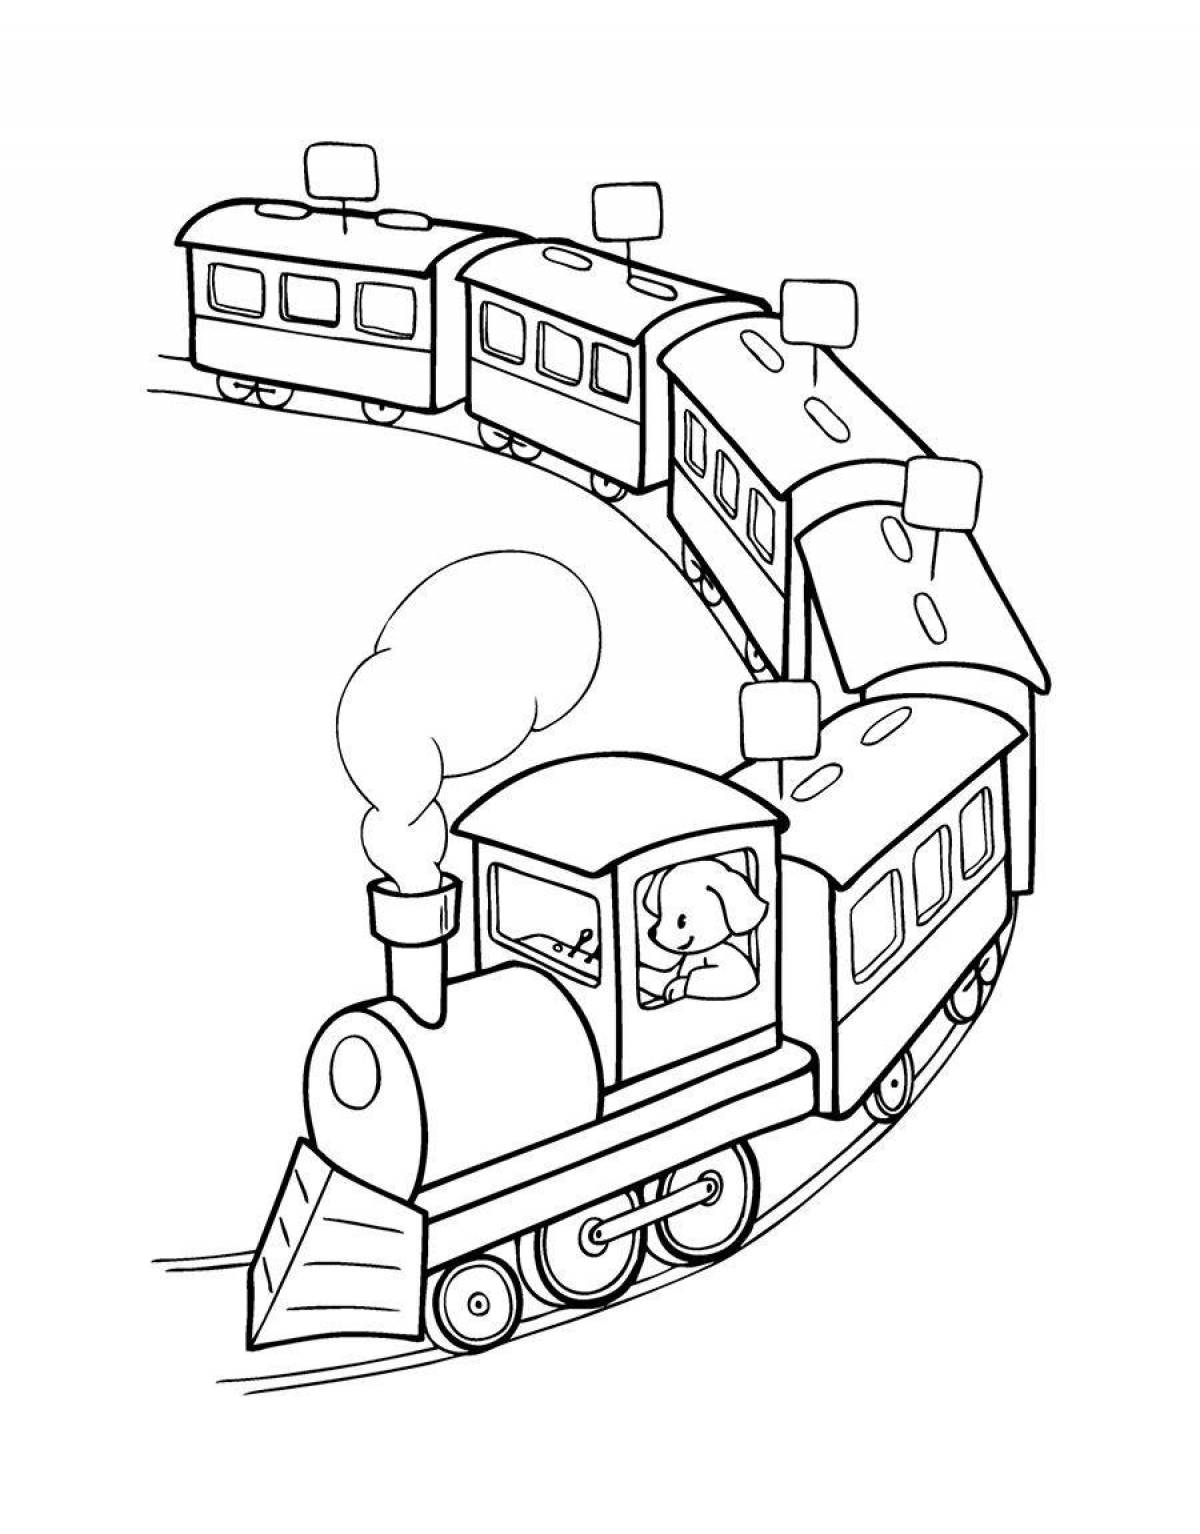 Раскраска Дети в вагоне, скачать и распечатать раскраску раздела Поезда